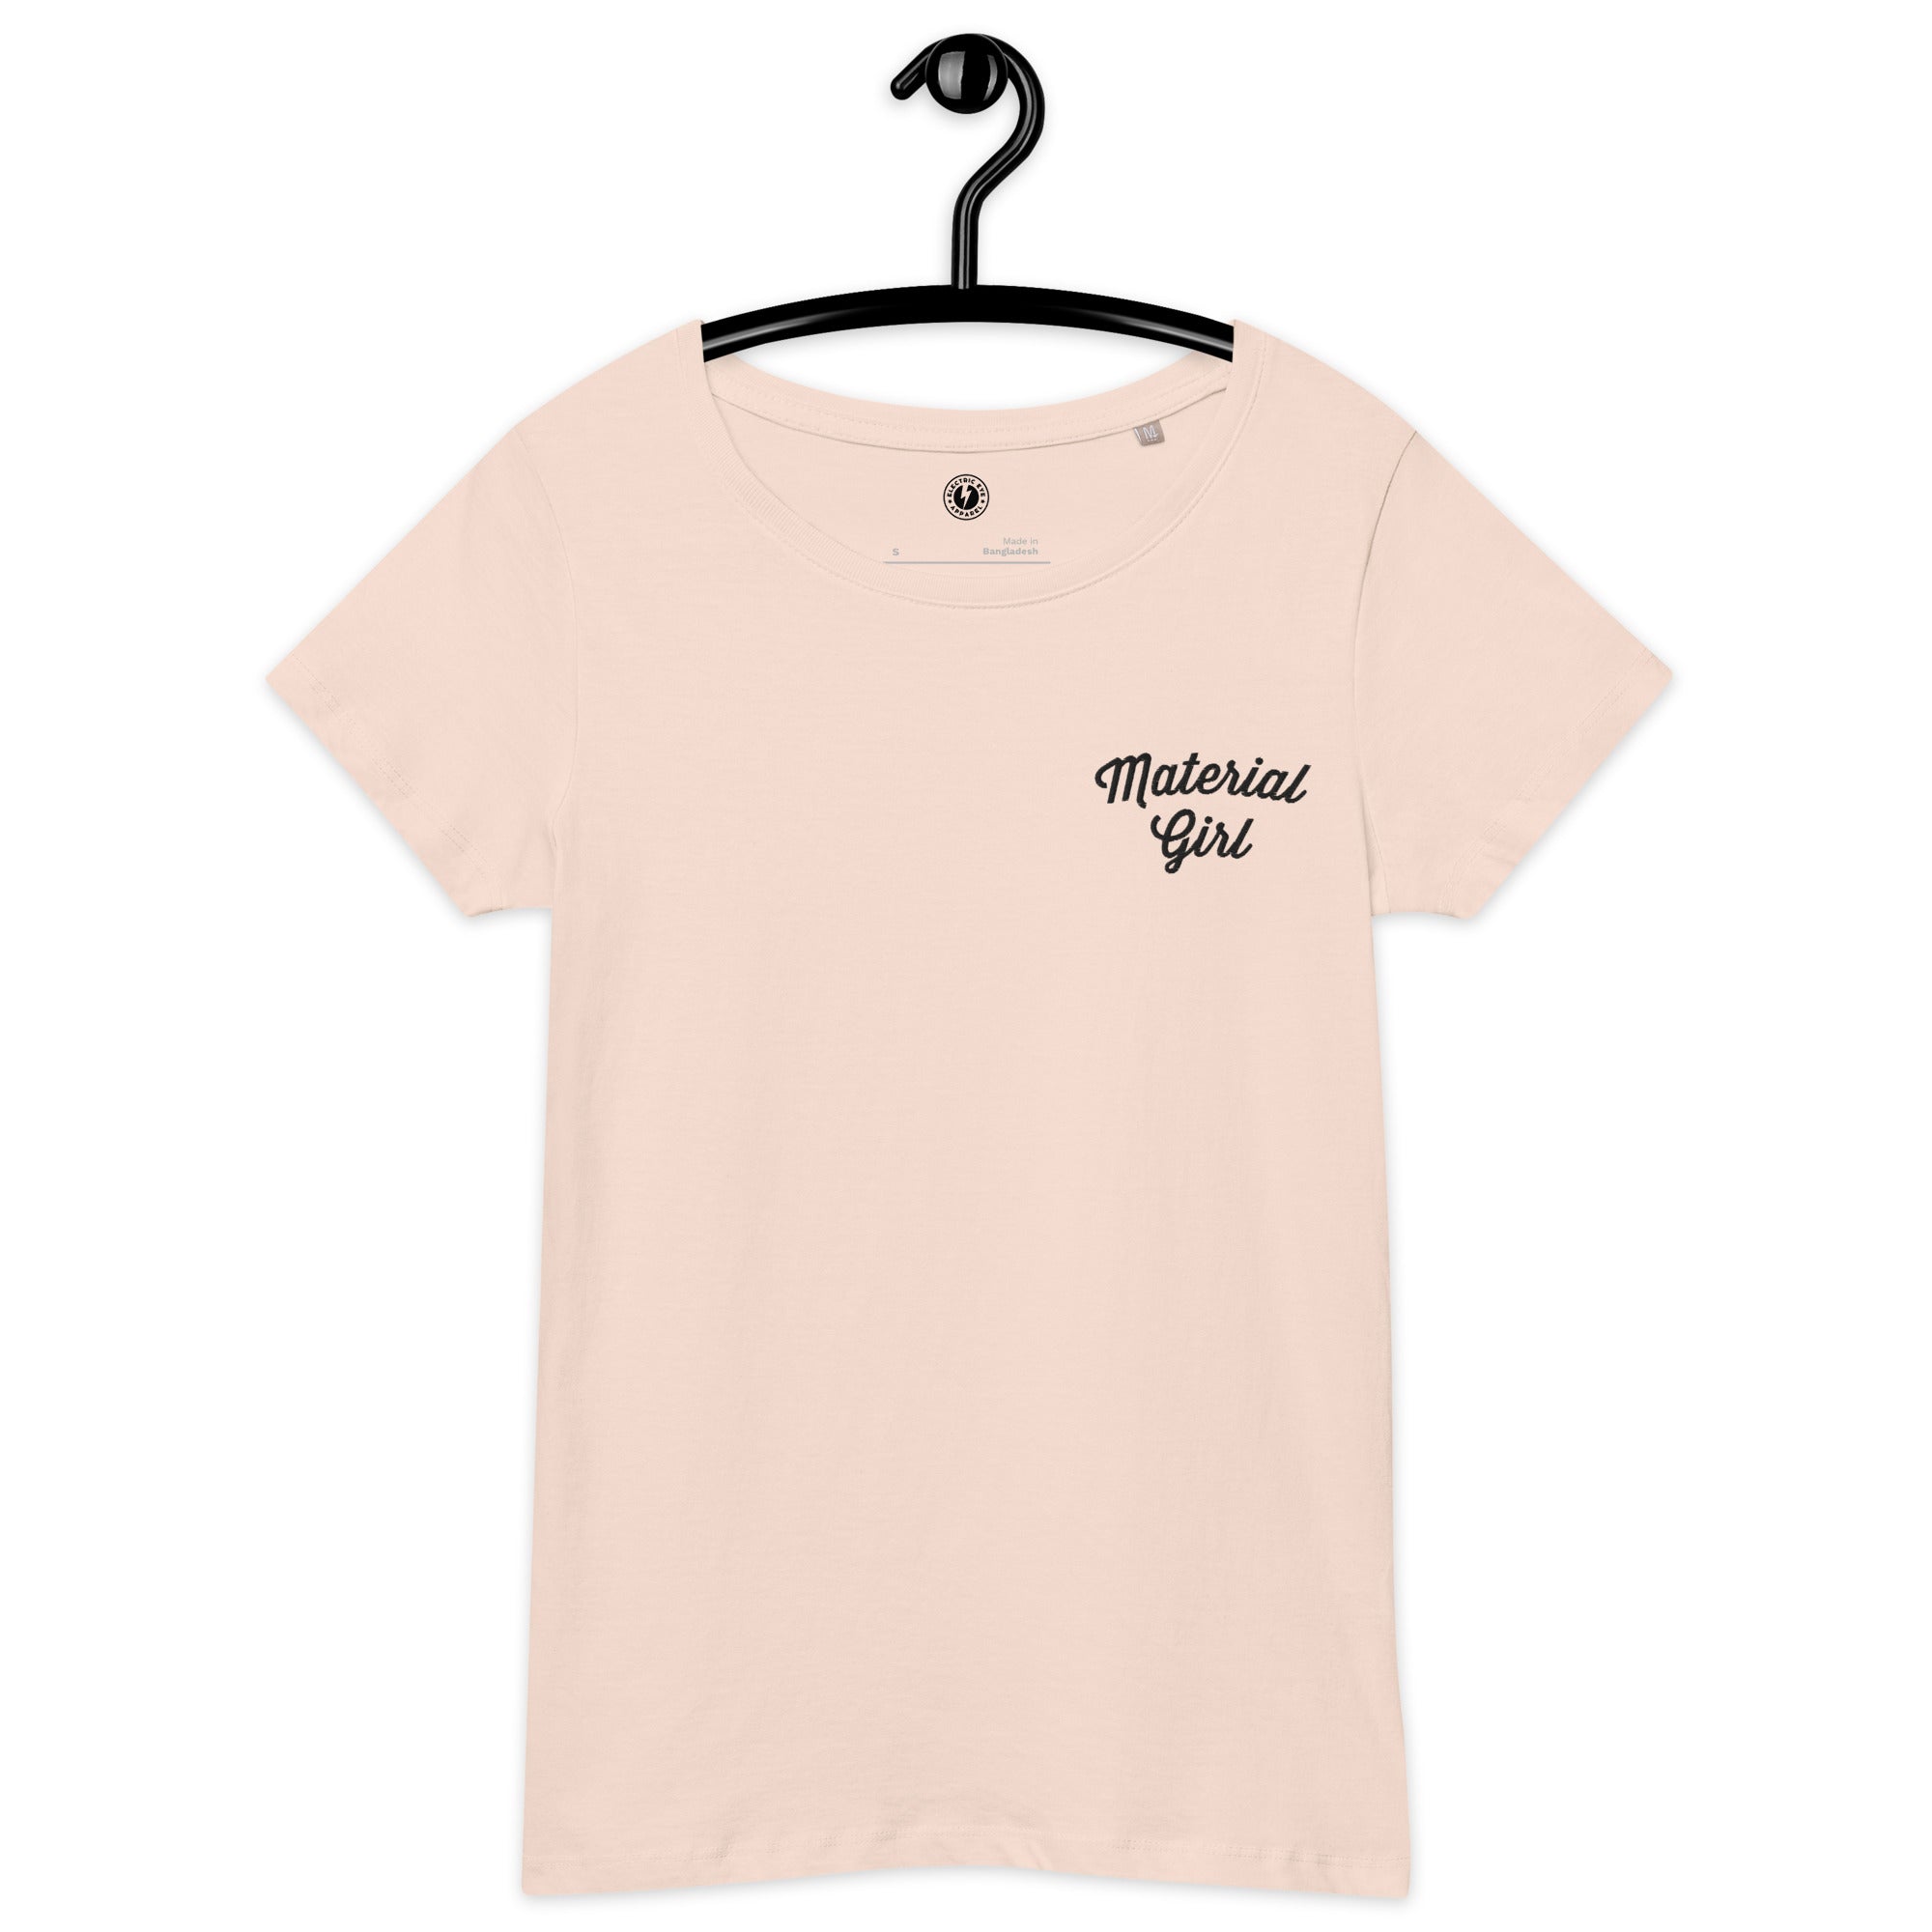 Material Girl Camiseta orgánica entallada de mujer bordada